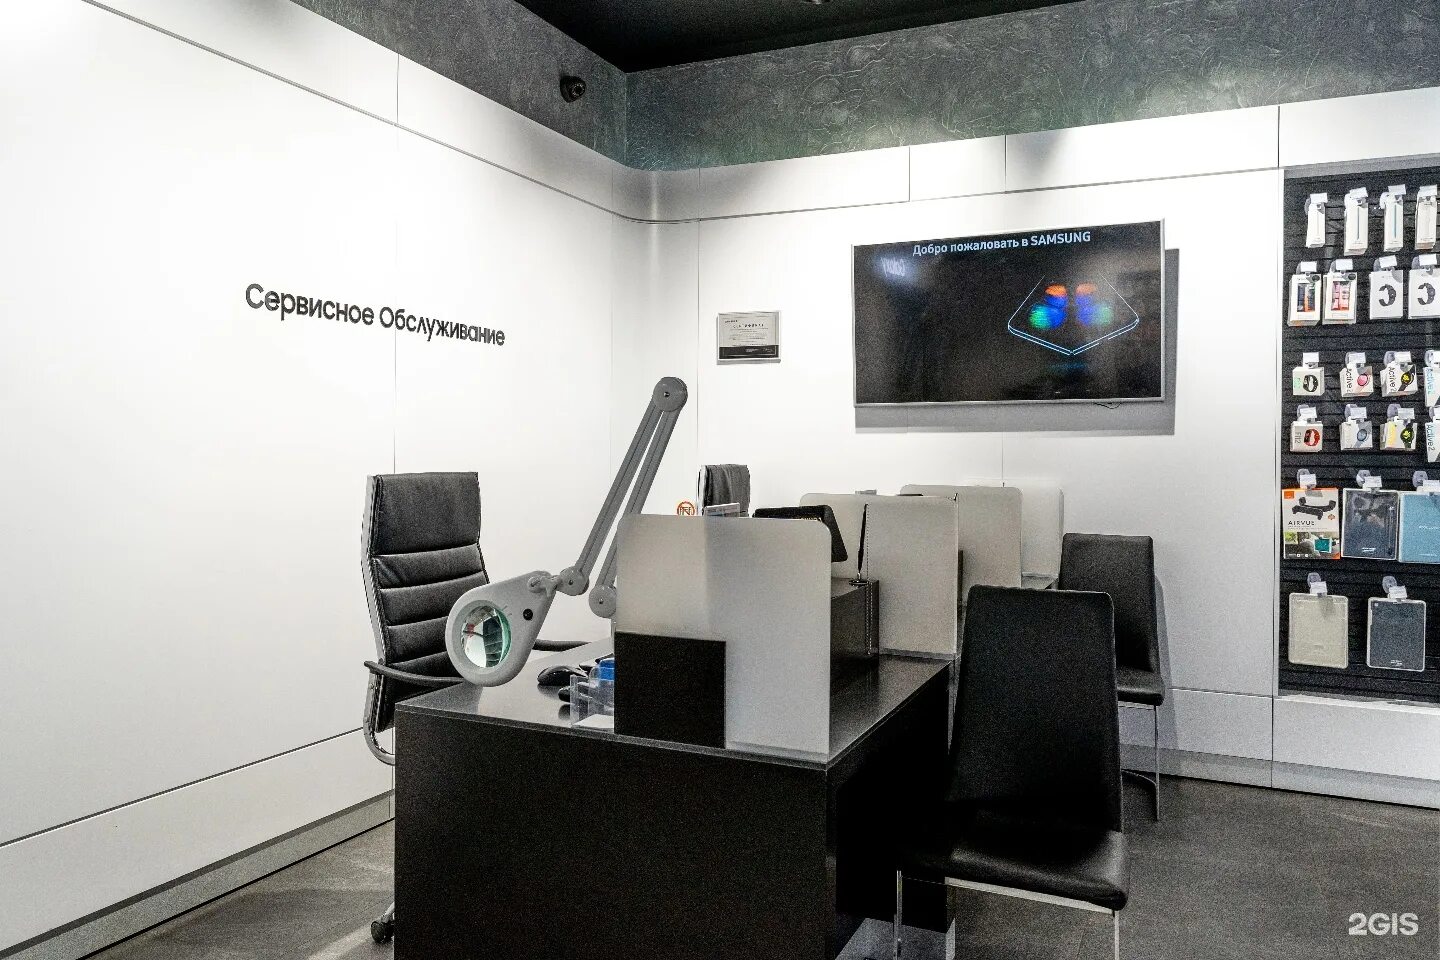 Космонавтов 14 фирменный центр самсунг. Сервисный центр Samsung. Самсунг сервис Плаза Москва. Самсунг сервисное обслуживание.